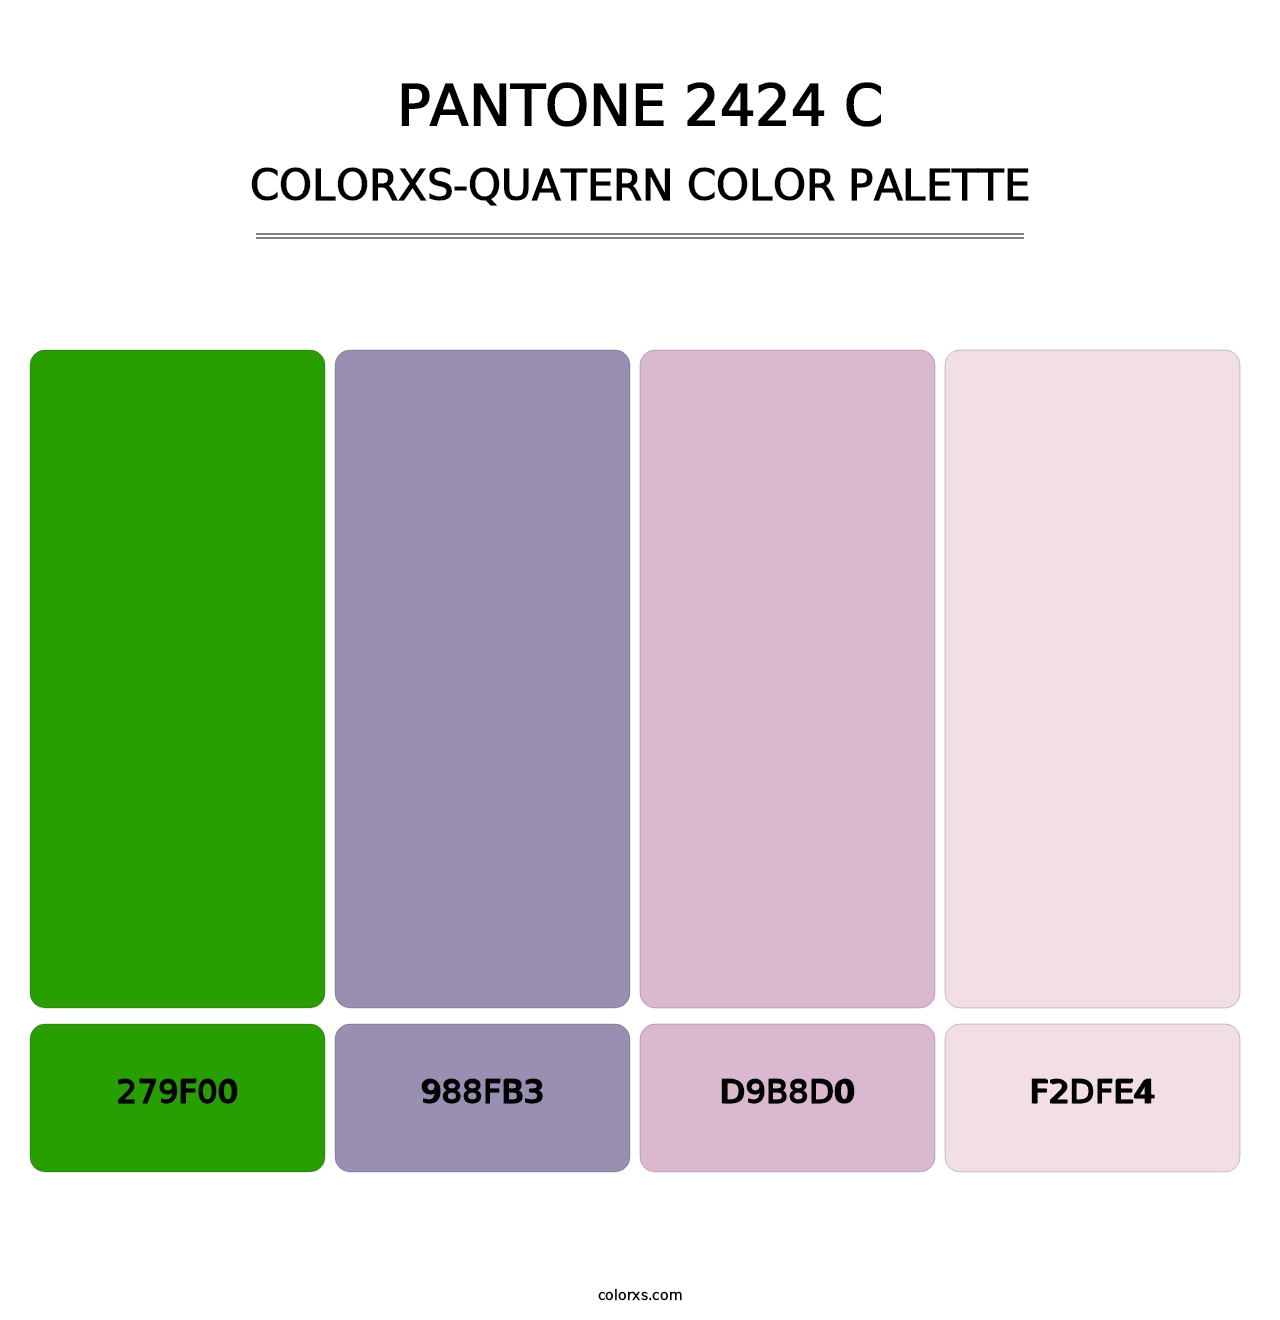 PANTONE 2424 C - Colorxs Quatern Palette